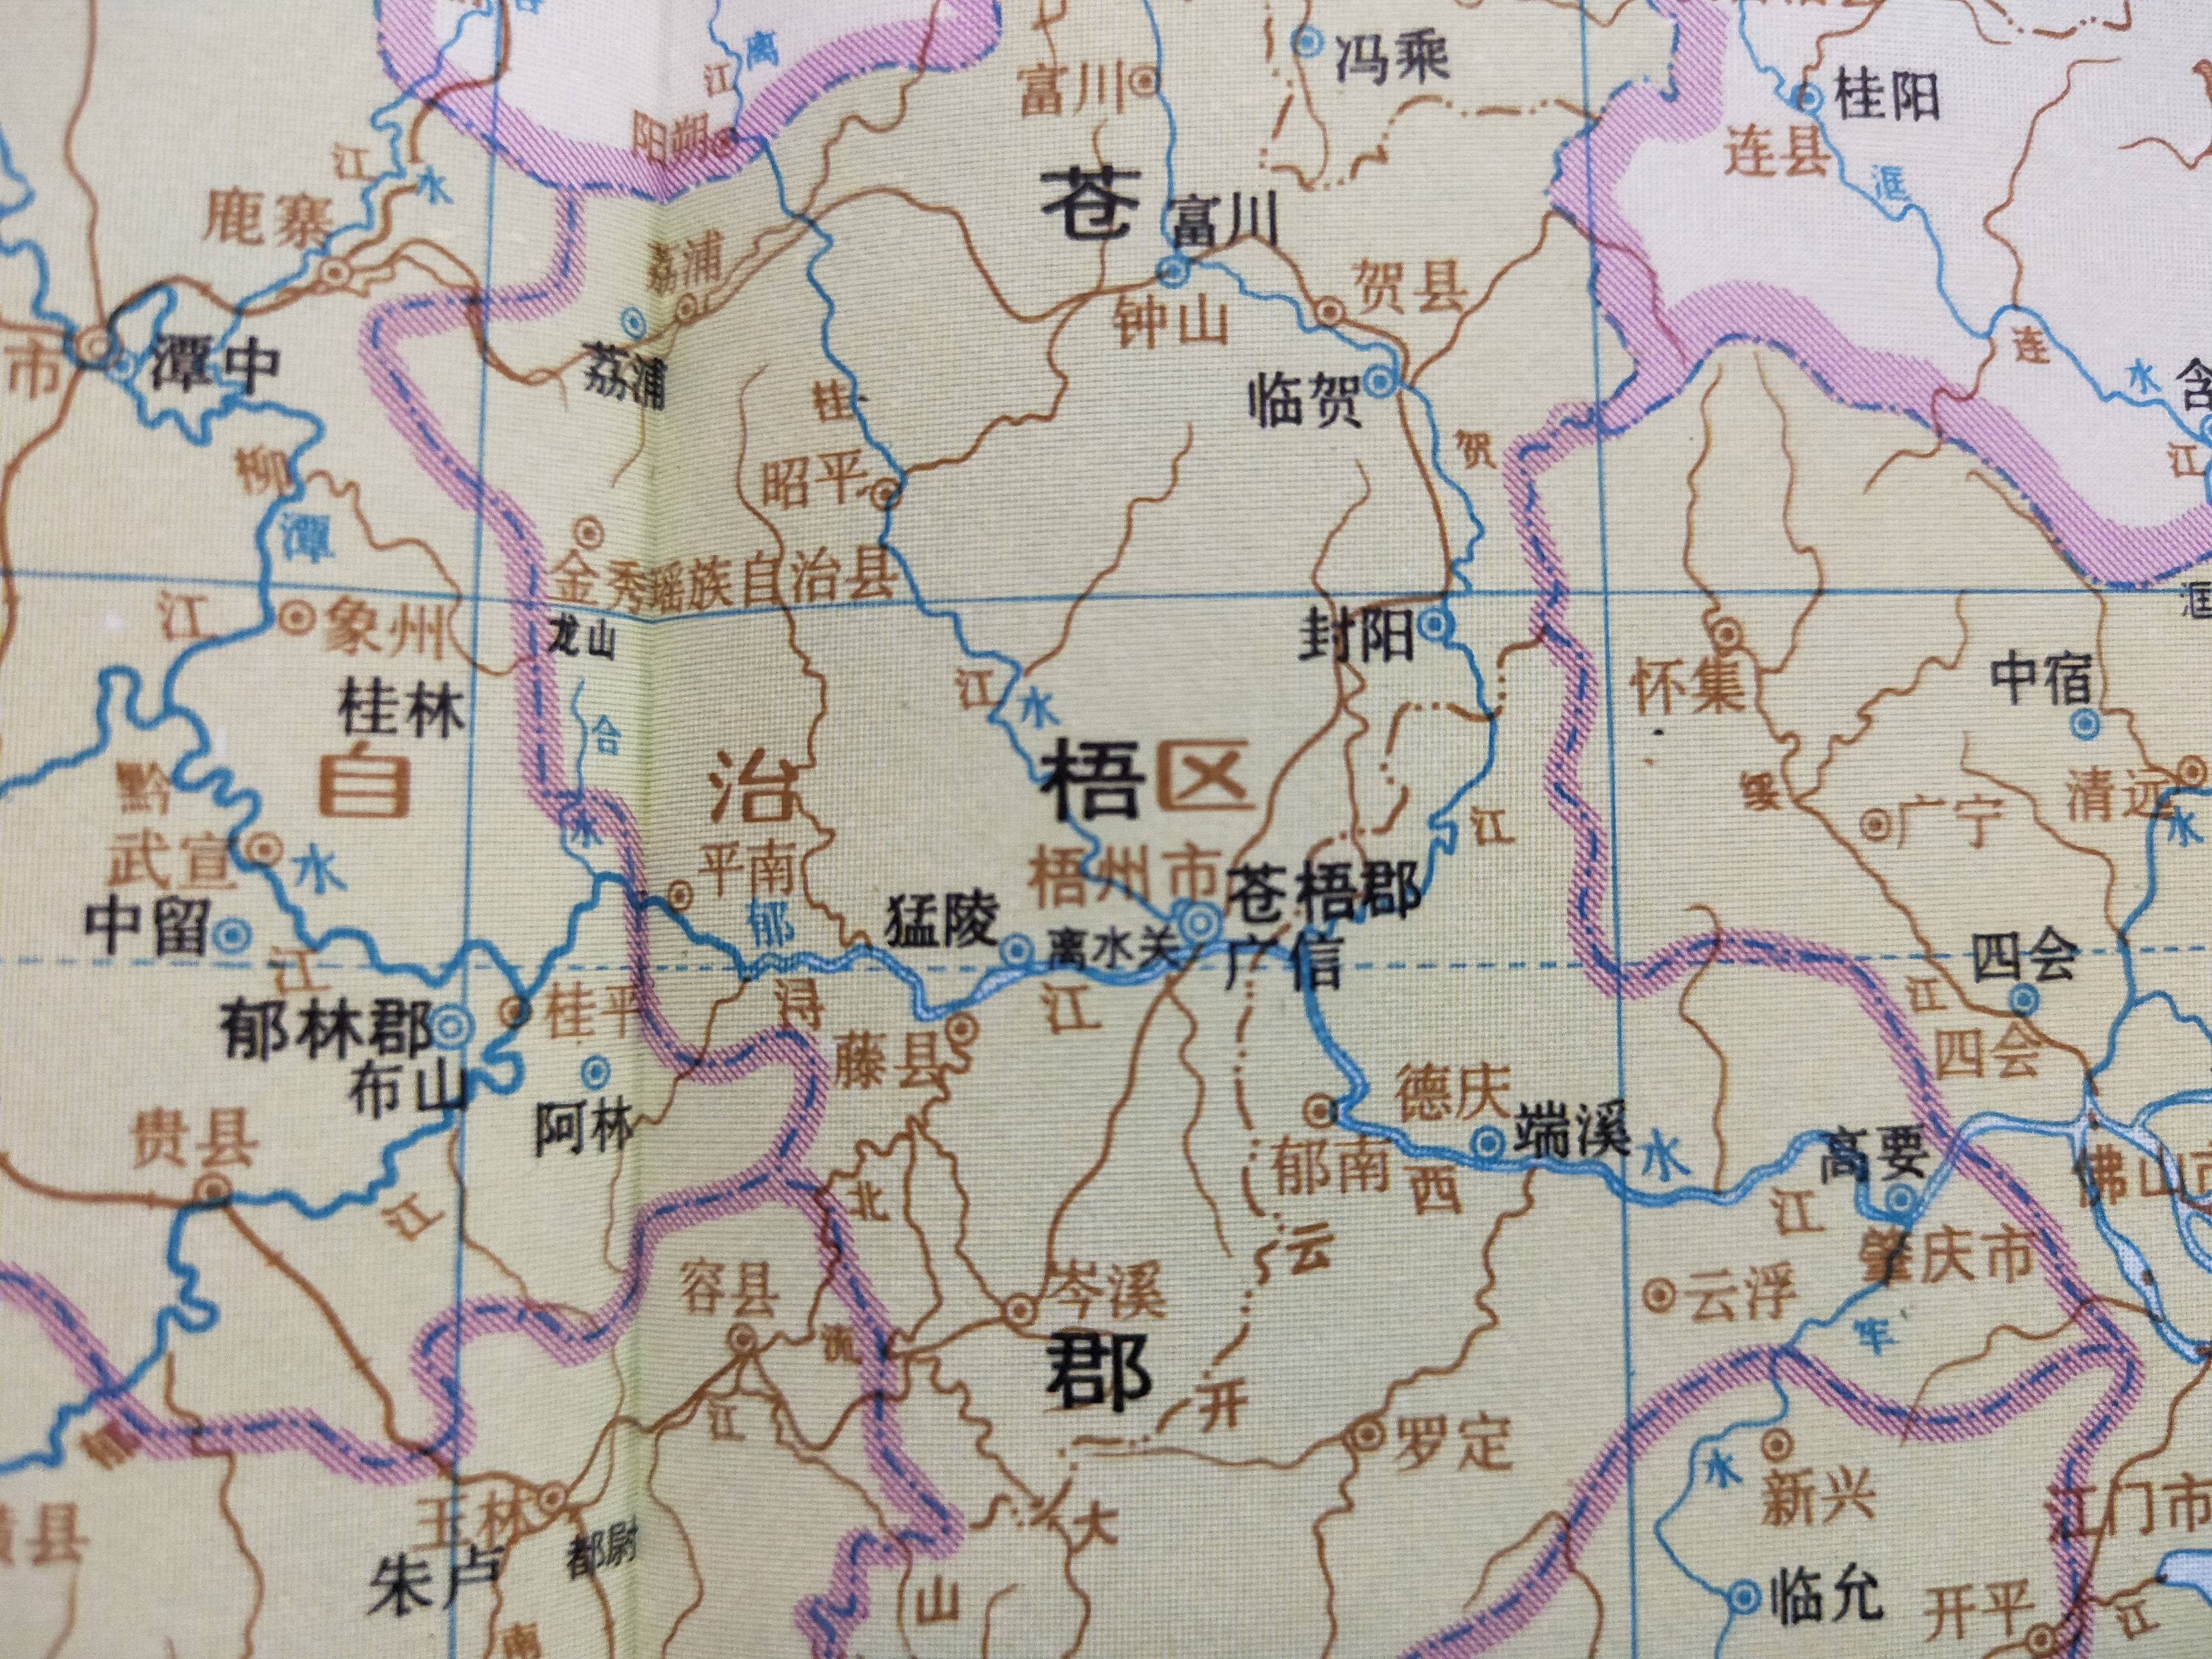 古地名演变:广西梧州古代地名及区划演变过程